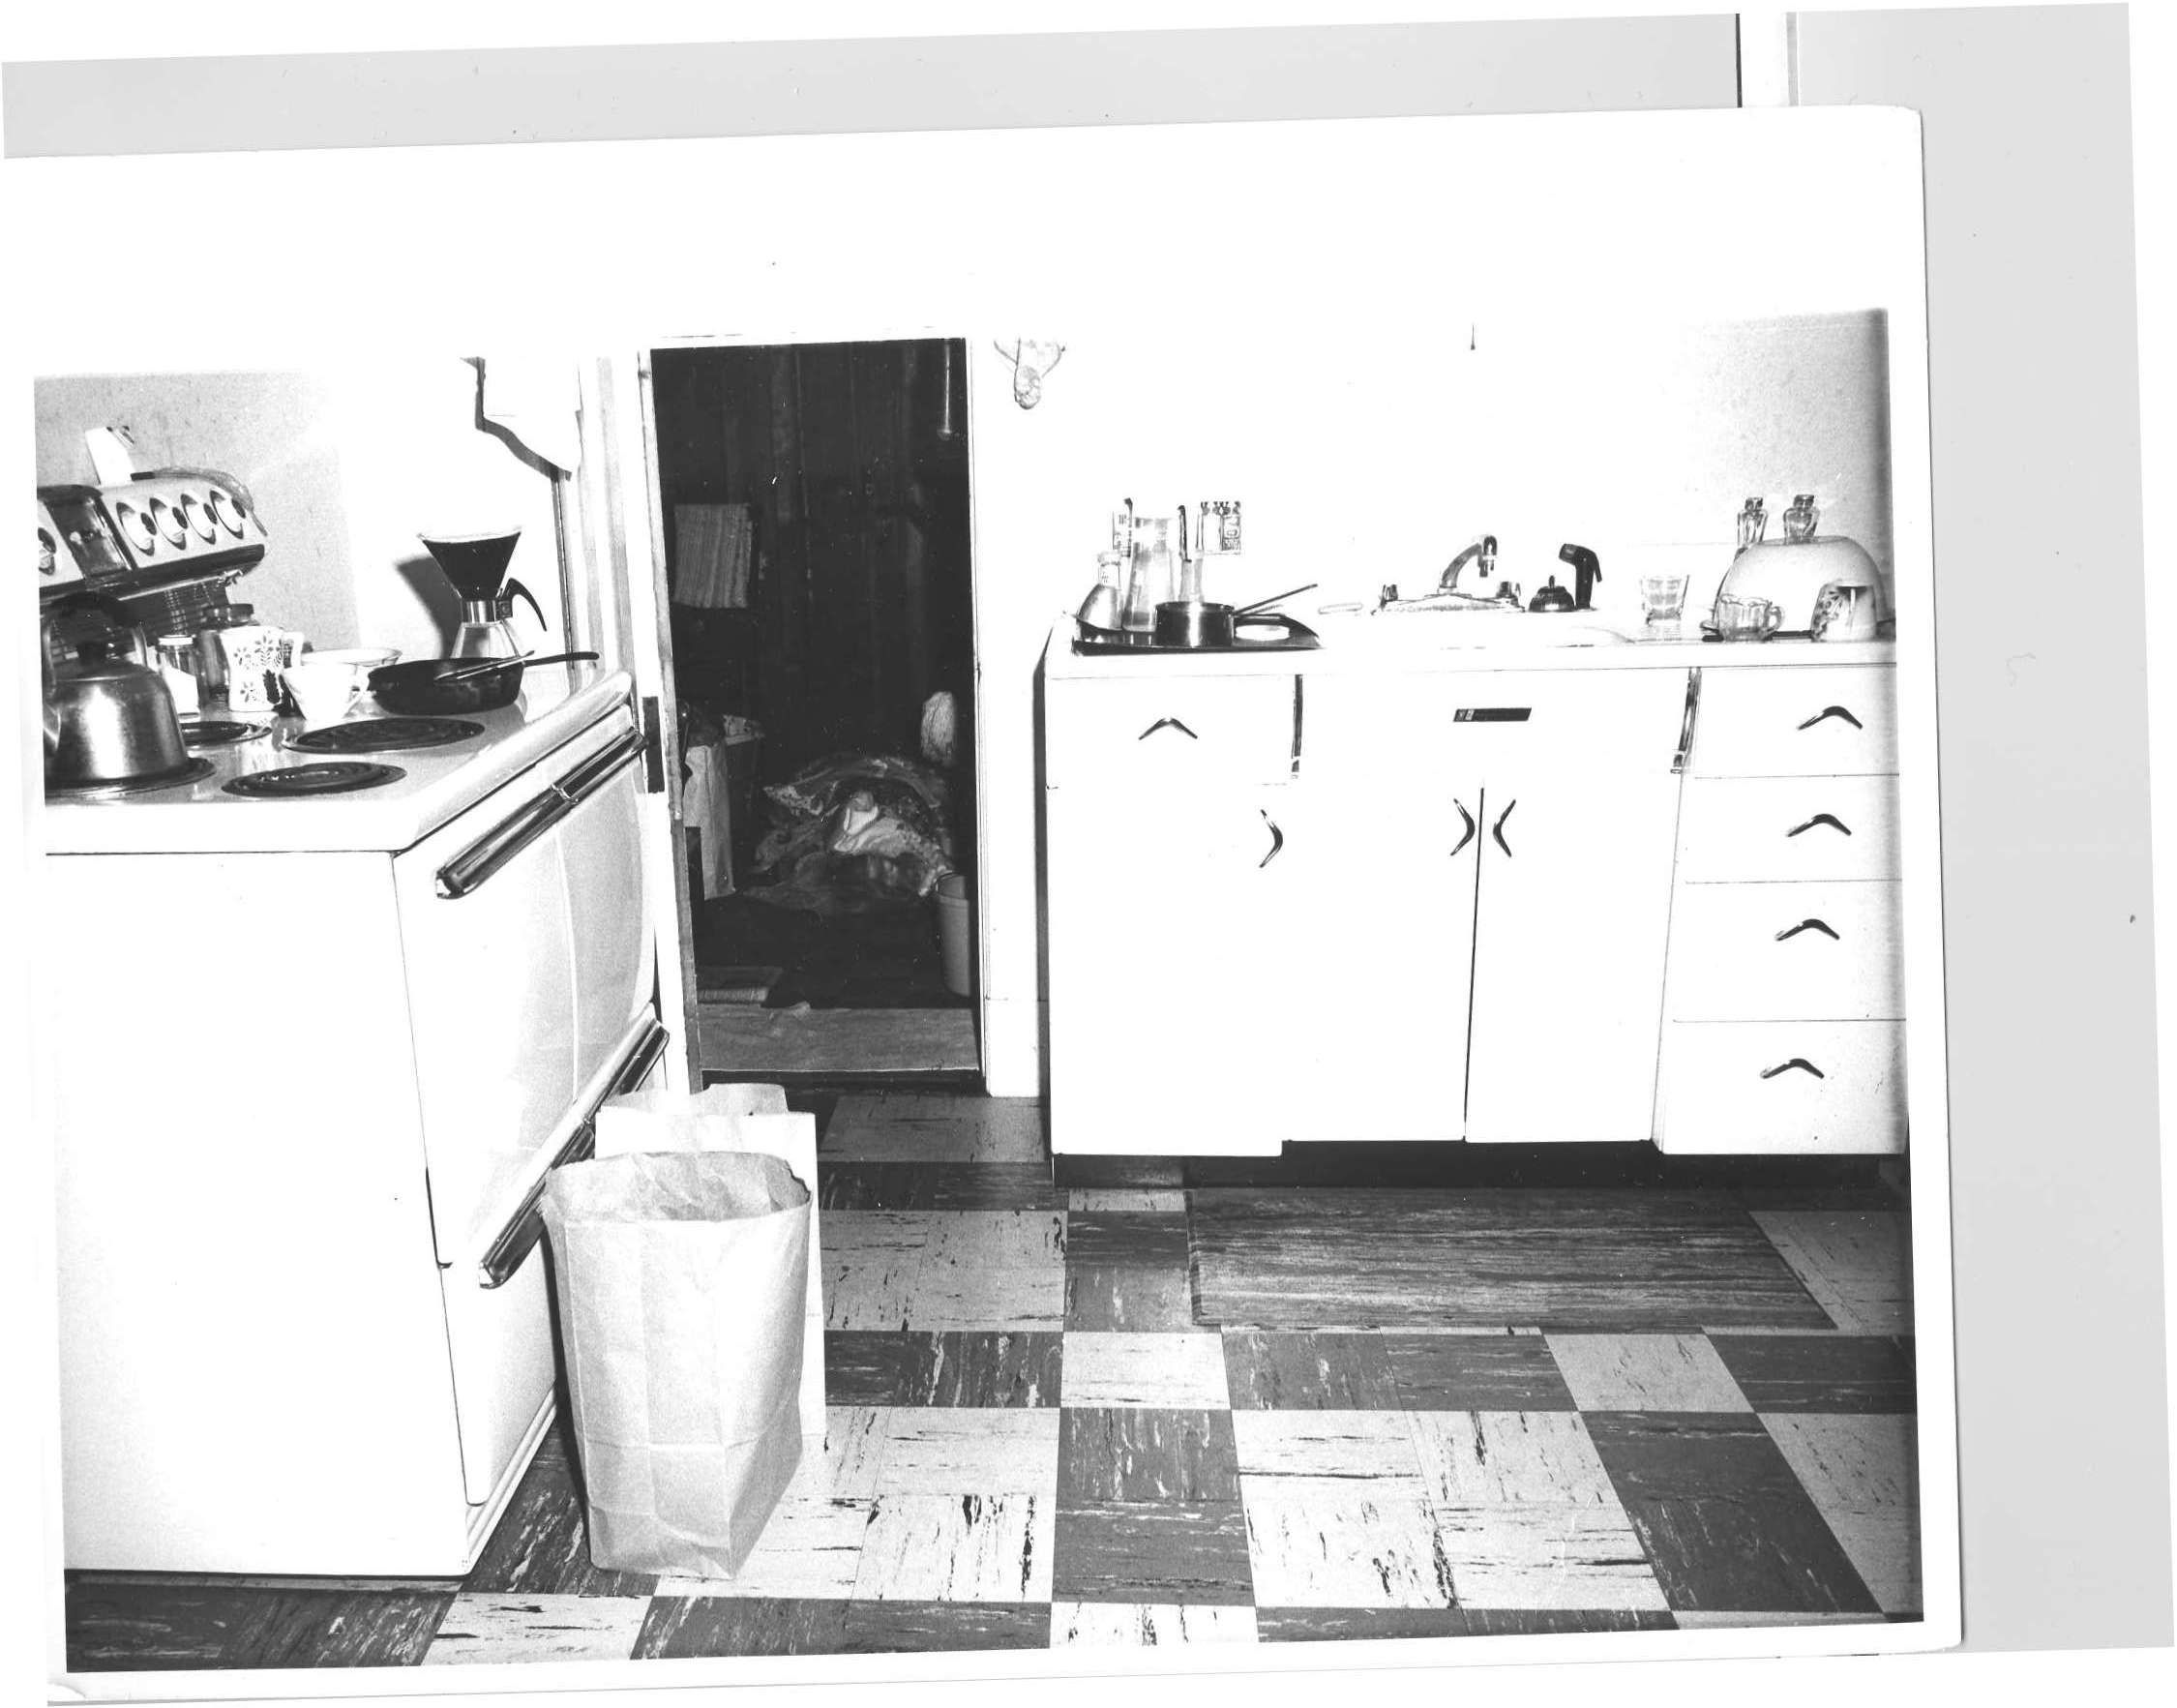 La police a découvert le corps d'Alma List, 84 ans, la mère de John List, dans une pièce de rangement près de la cuisine de son appartement du troisième étage, le 7 décembre 1971. Avec l'aimable autorisation de la police de Westfield